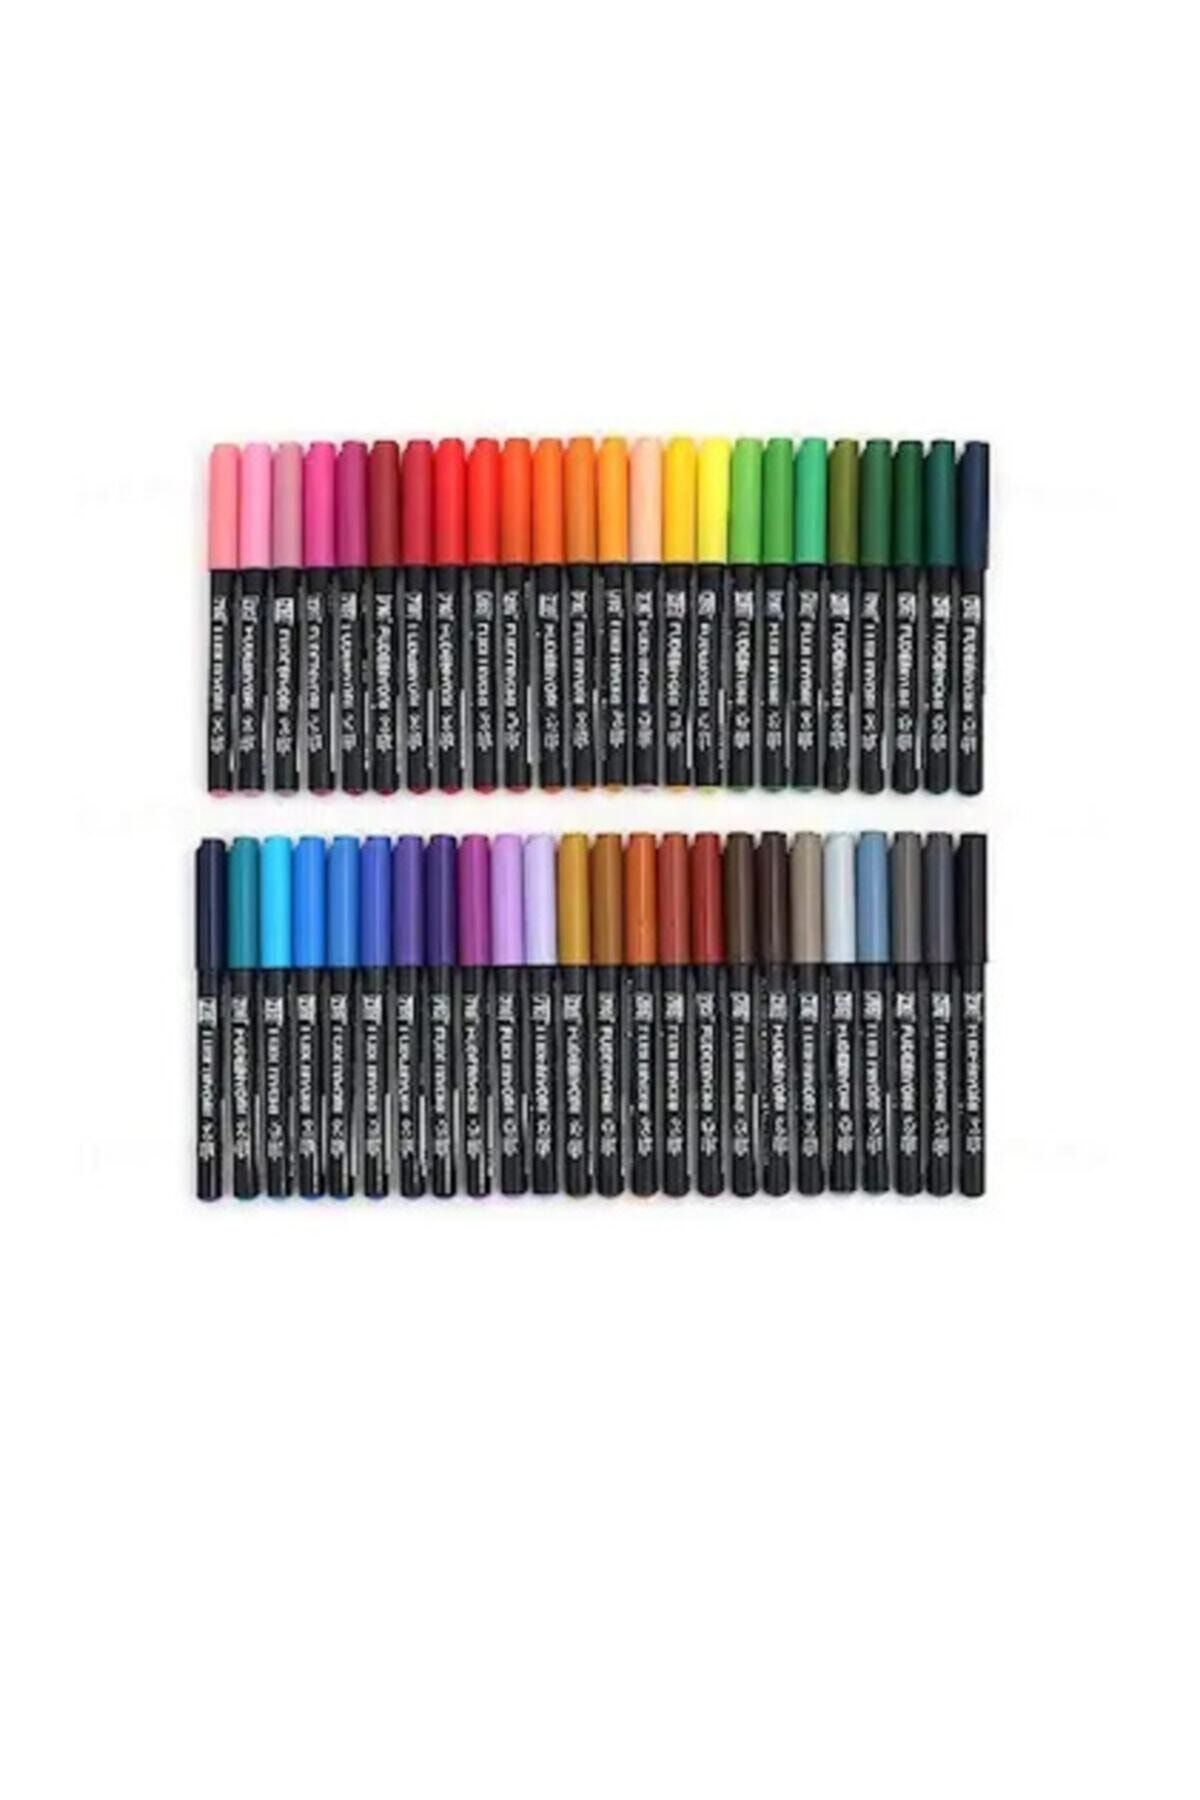 Zig Fudebiyori Brush Pen Fırça Uçlu Kalem Seti 36 Renk